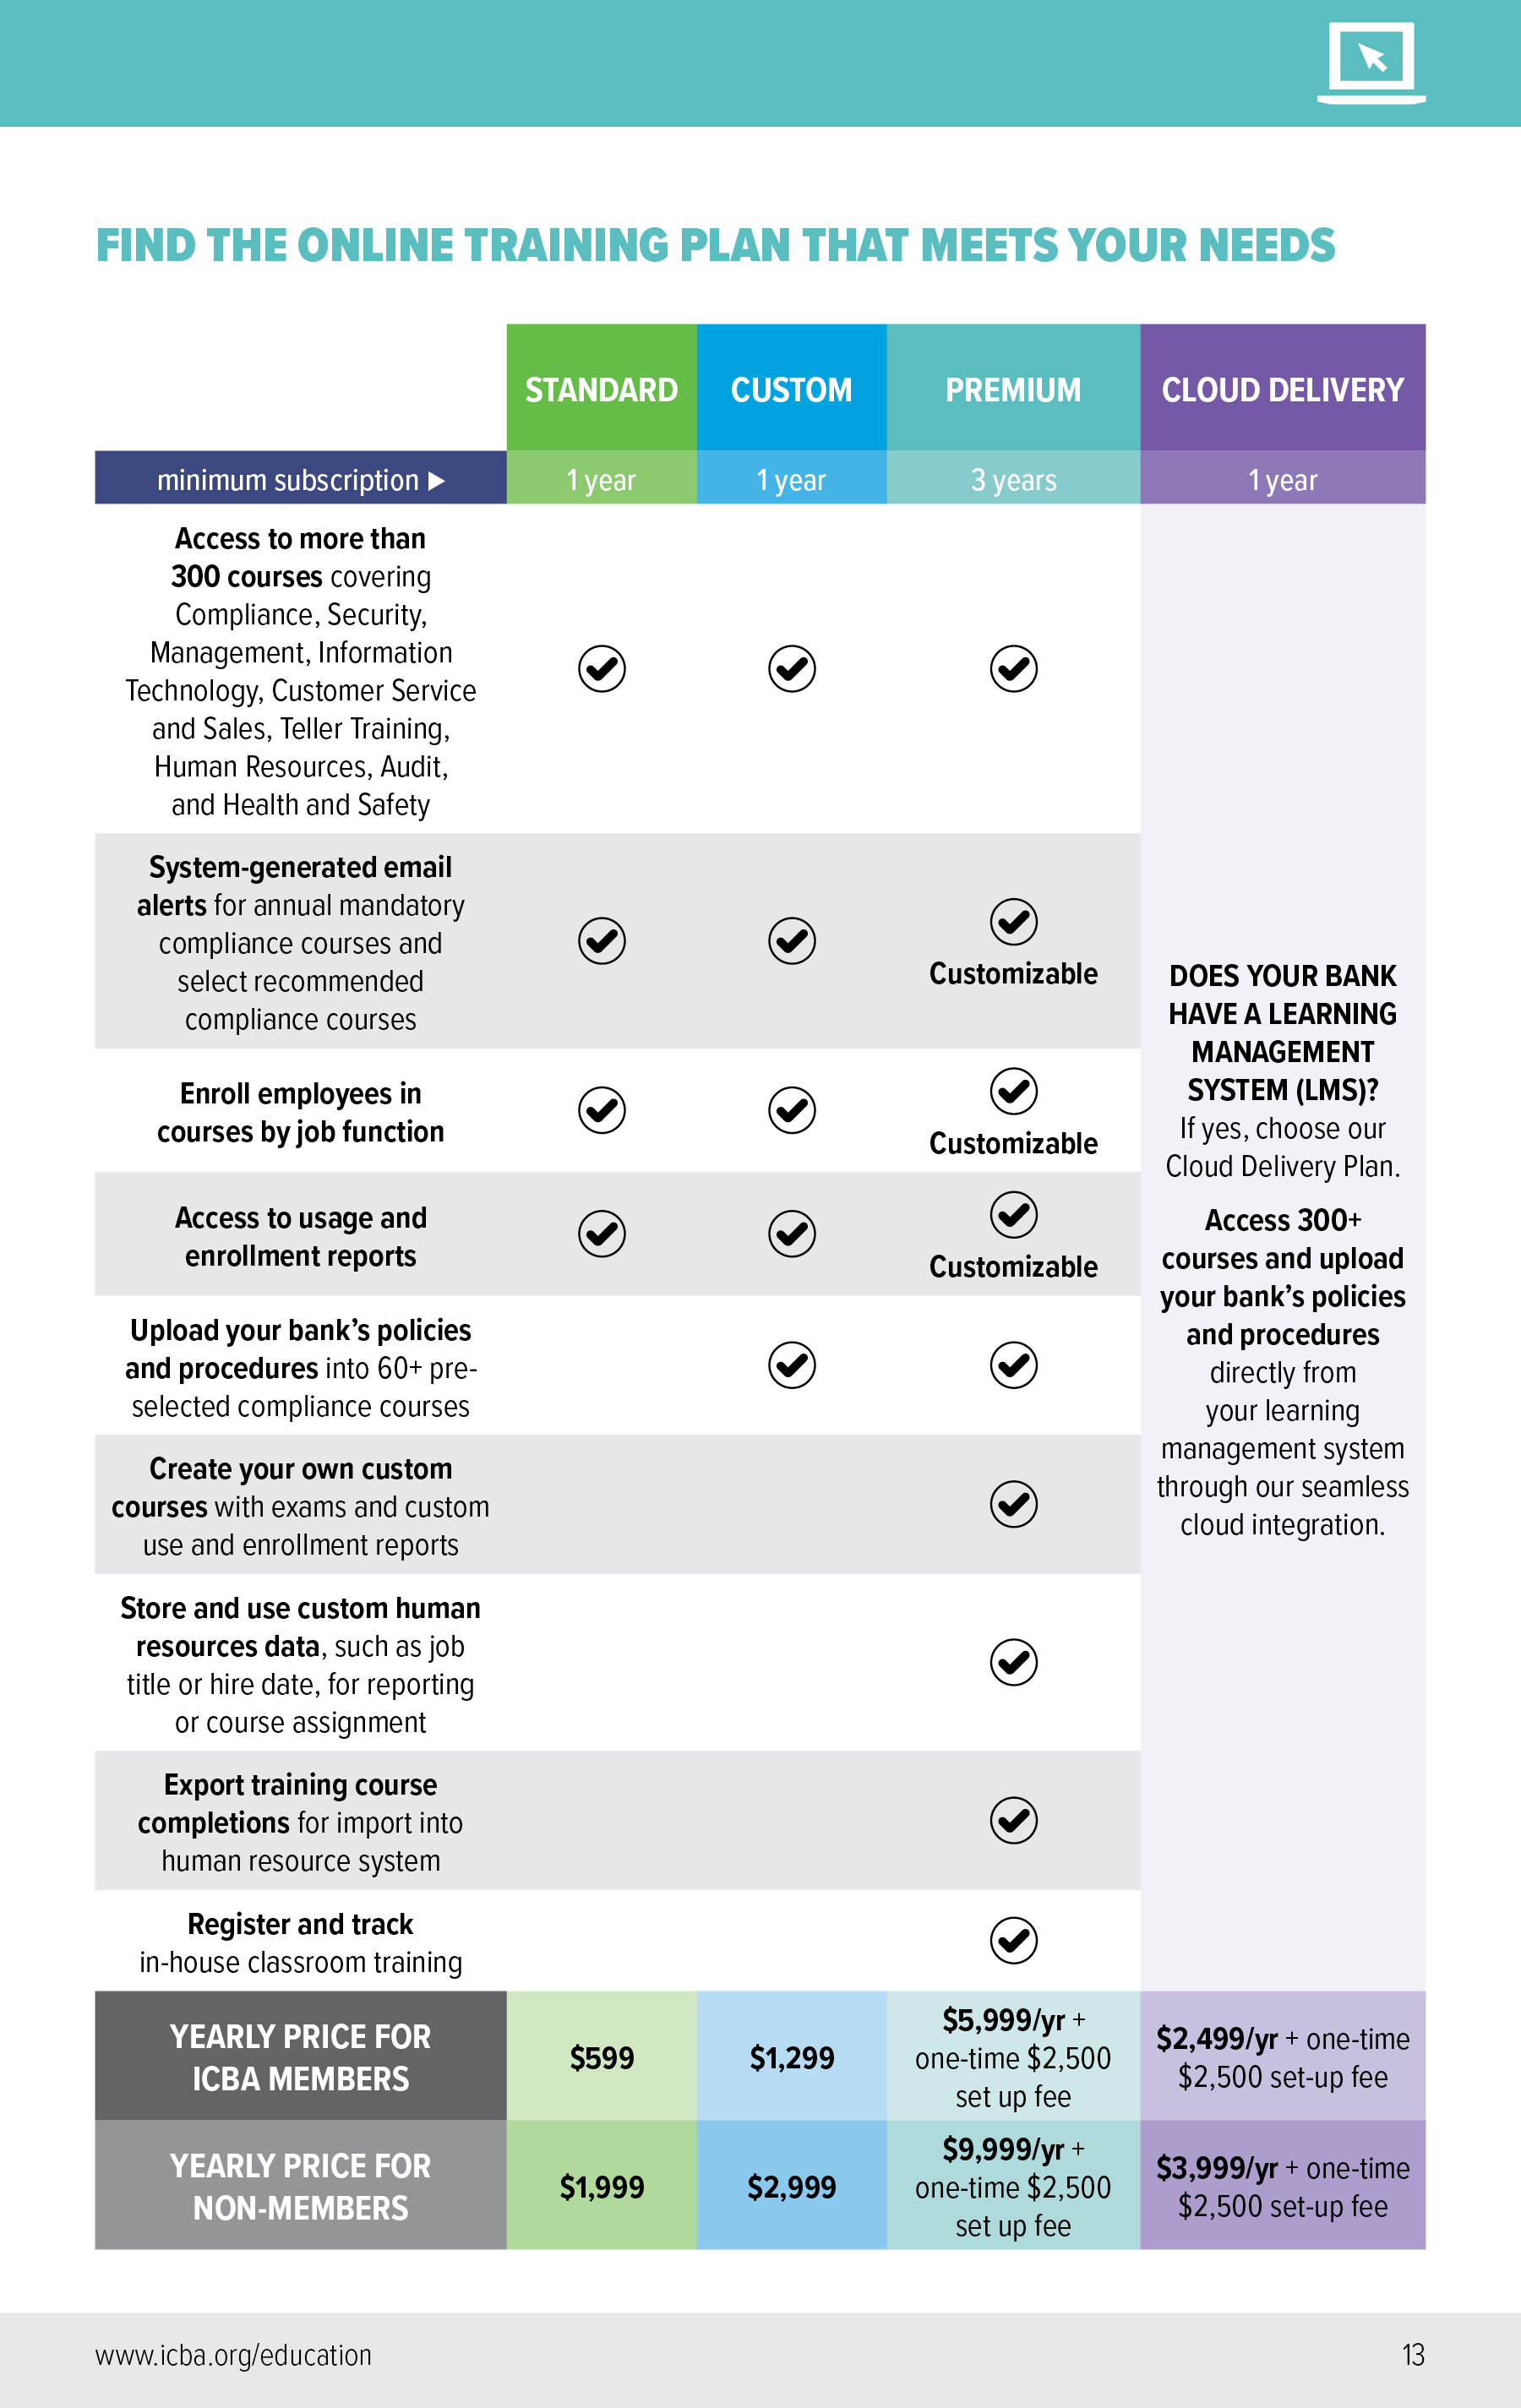 Lms Comparison Chart